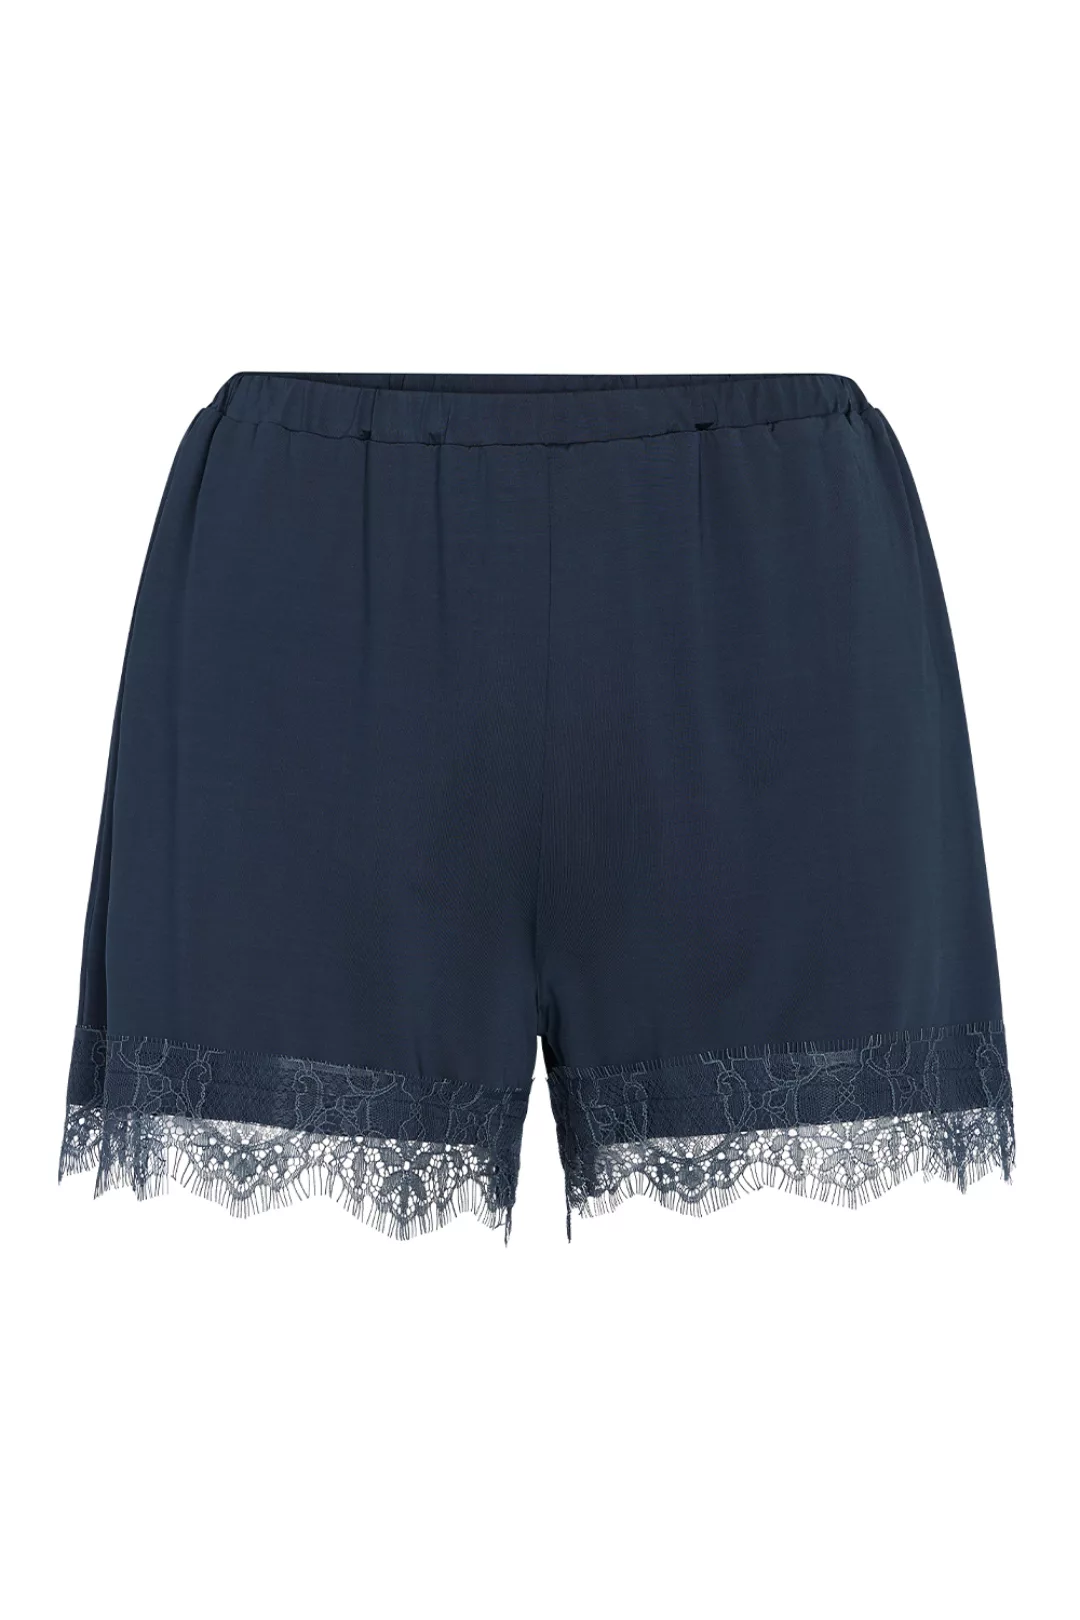 ESSENZA Natalie Uni Shorts Loungewear 4 36 blau günstig online kaufen